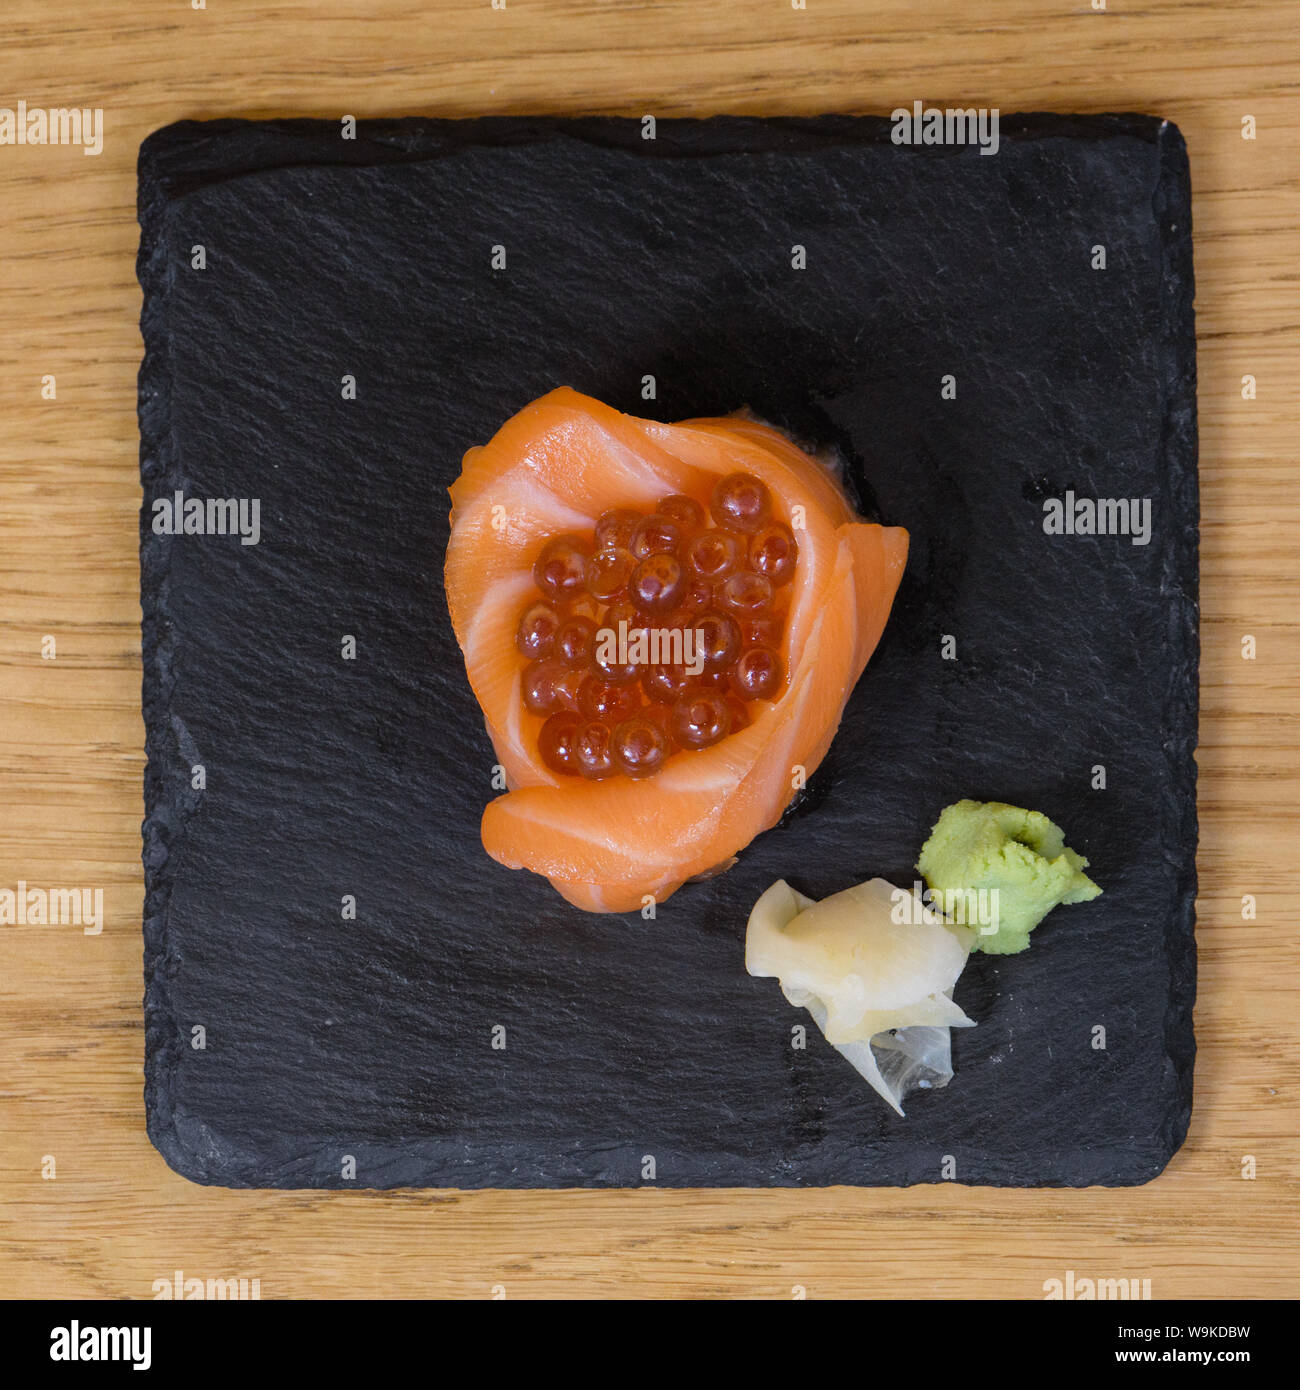 Composition de la nourriture pour poissons, les filets de saumon monté sous la forme d'une tasse, farcie de caviar, servi de plaque sur une dalle d'ardoise, garni d'un gingembre Banque D'Images